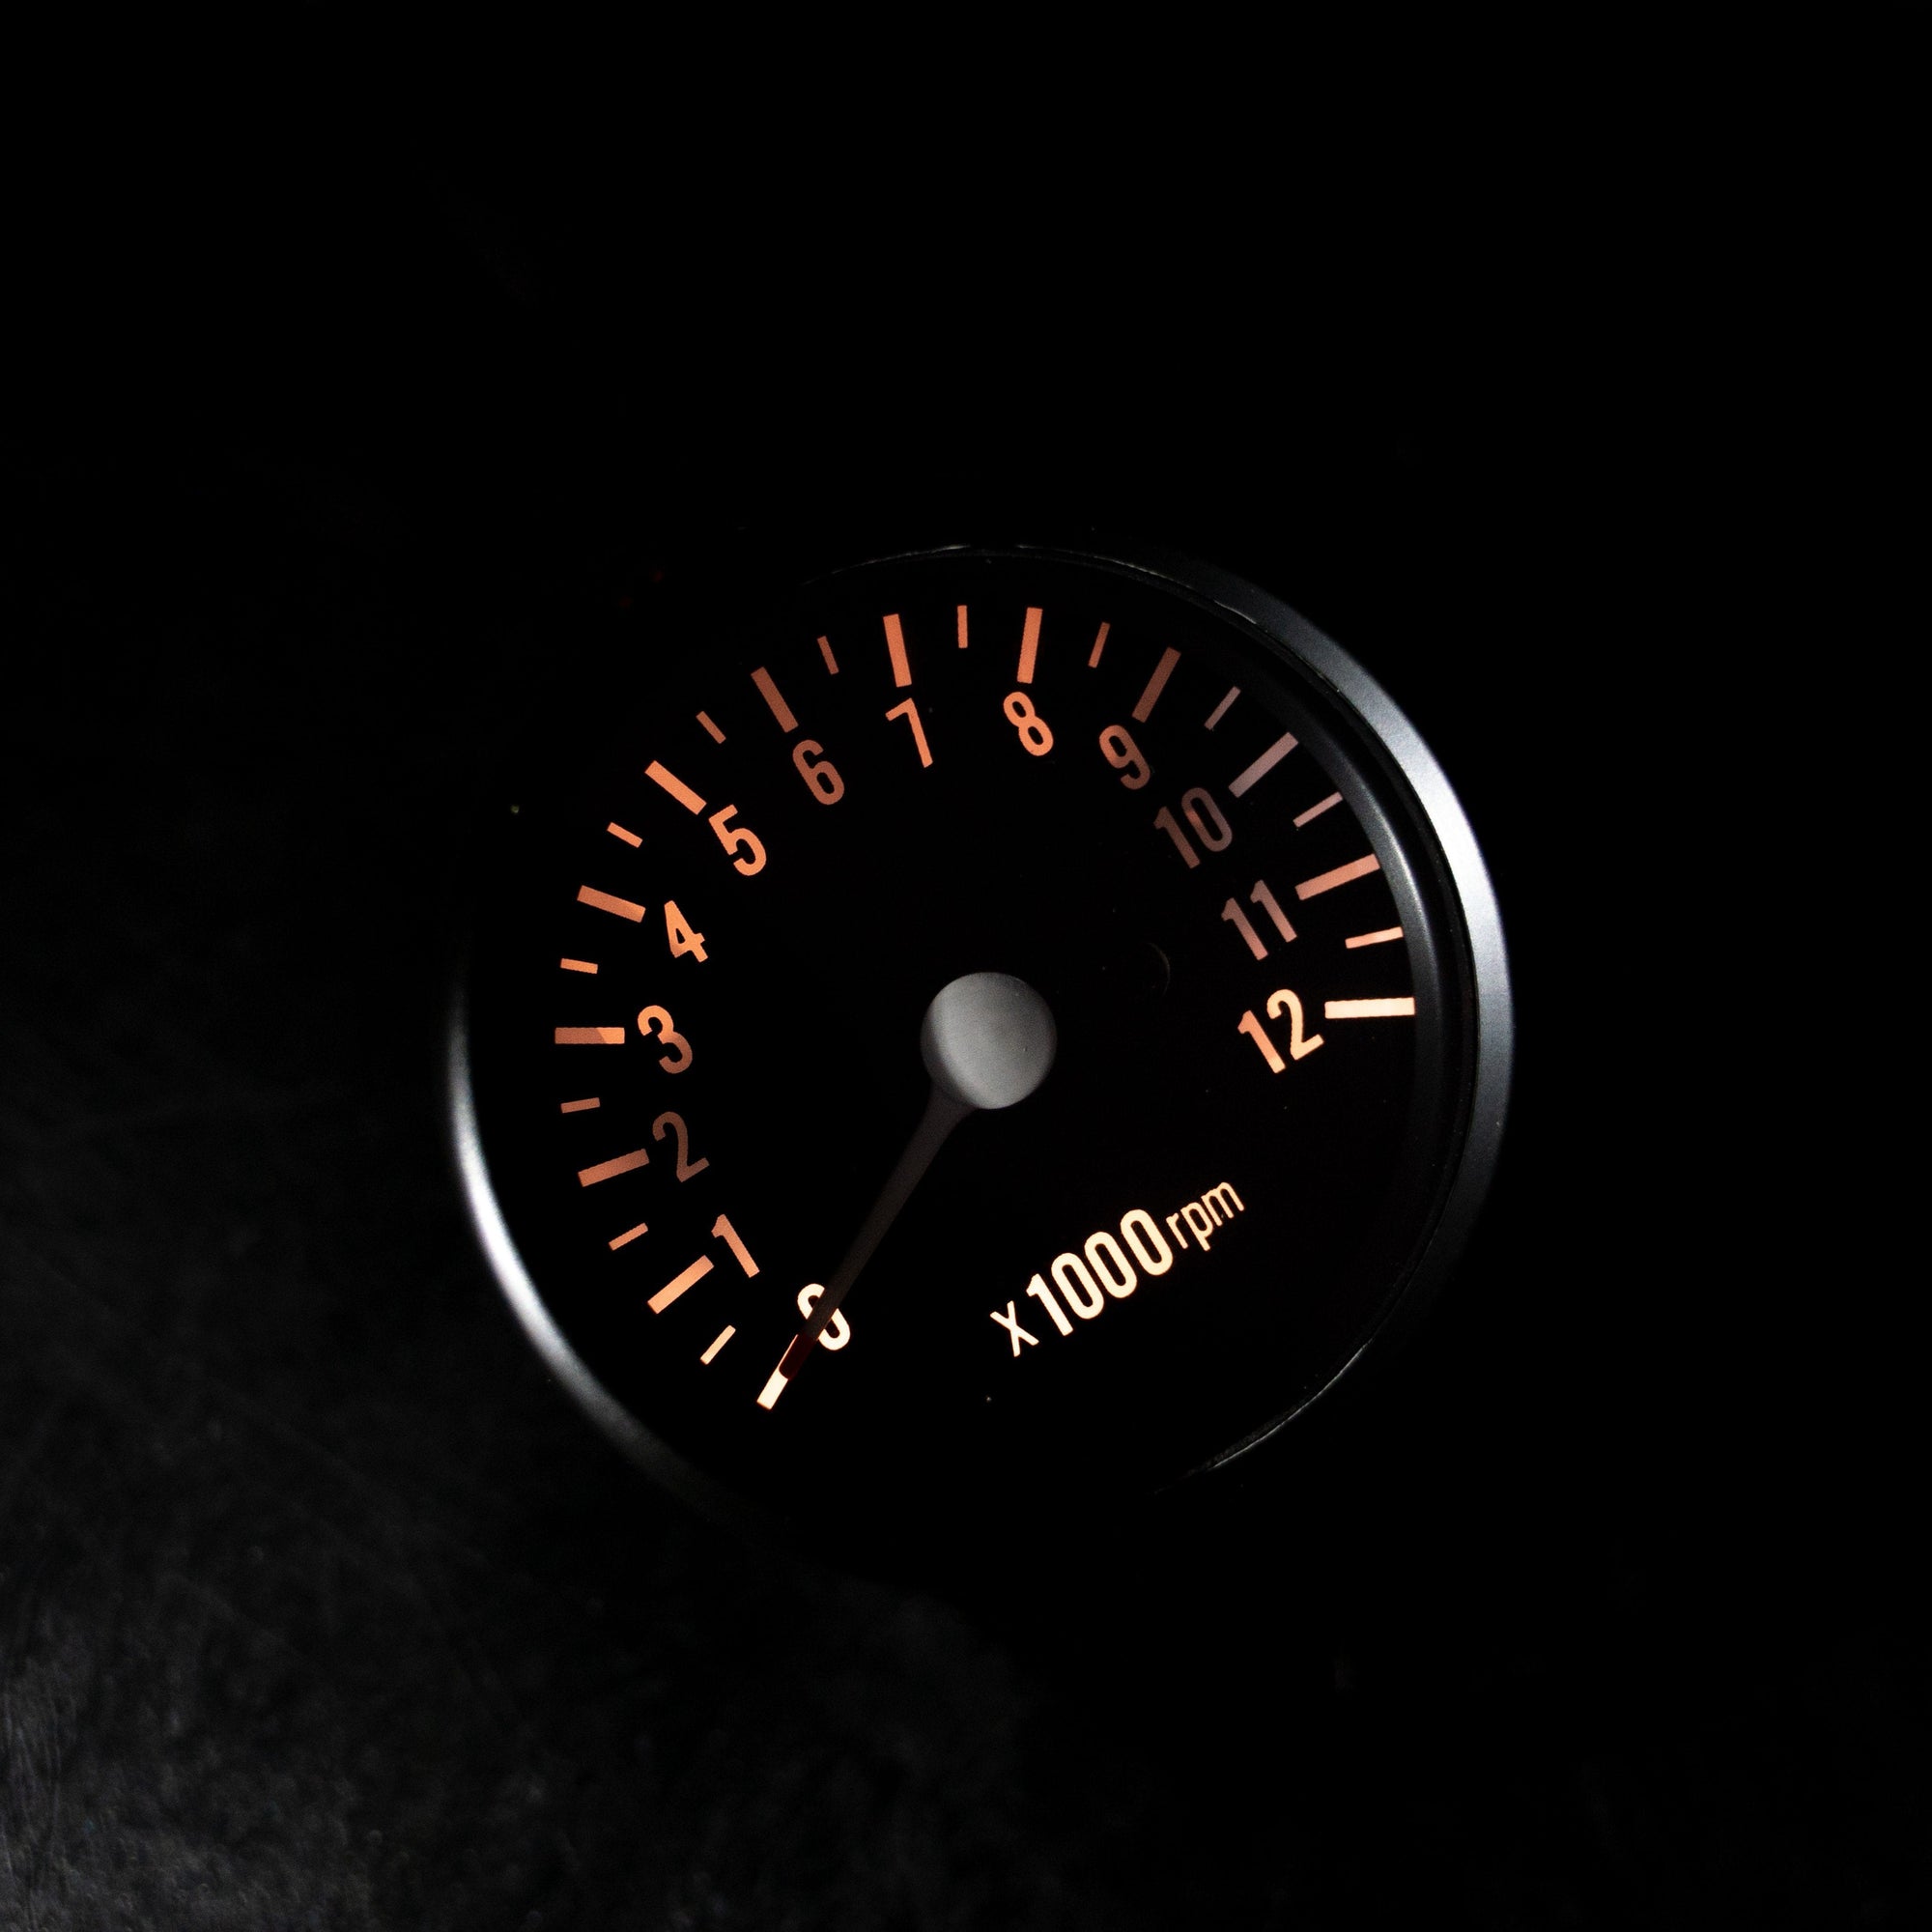 Black Mini Tachometer w/ Clamp (4:1 Ratio)